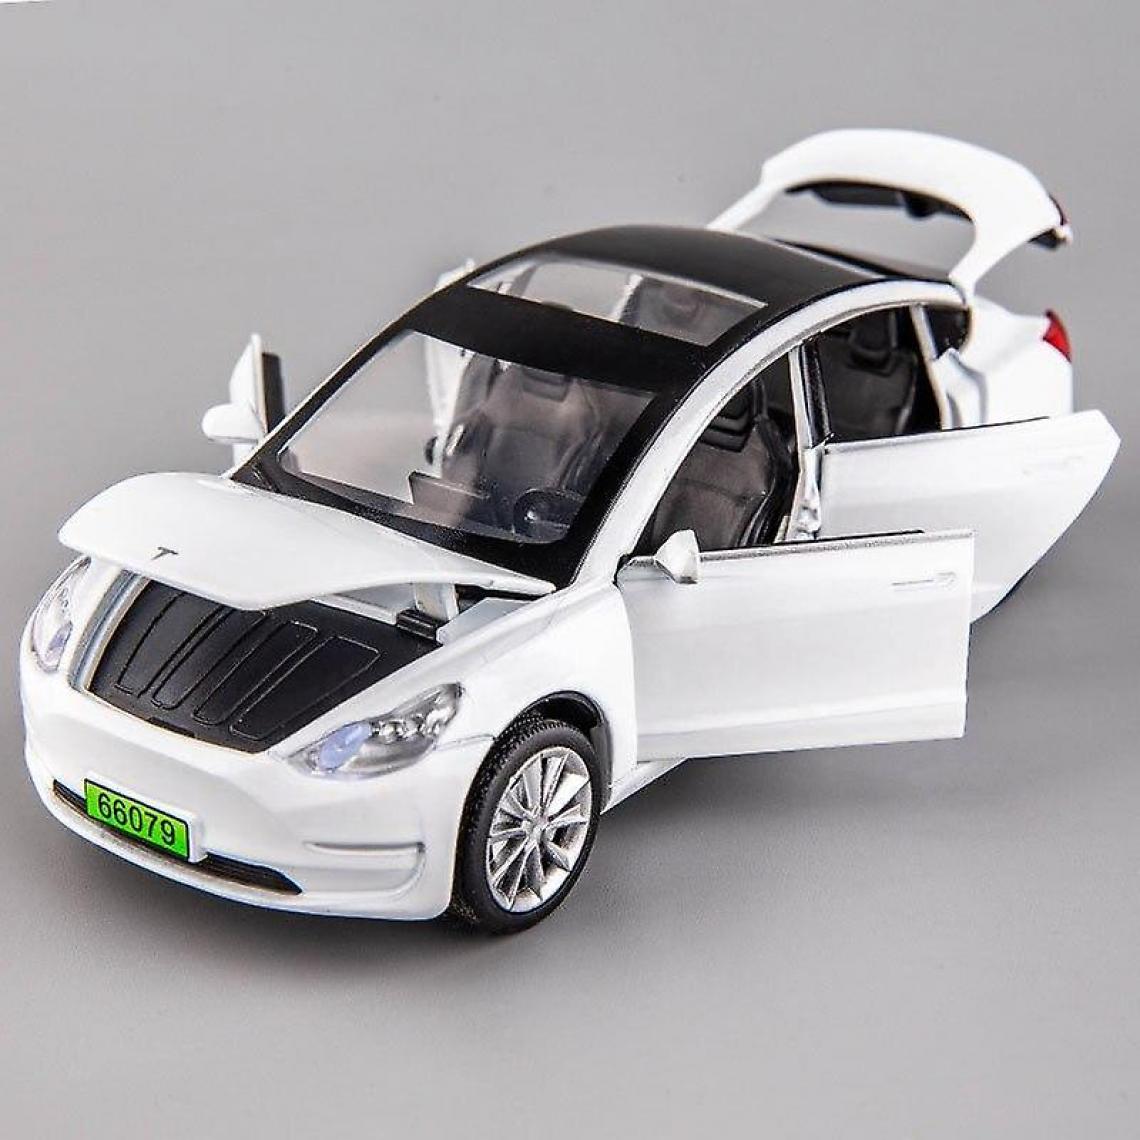 Universal - Modèle 3 blanc 1: 32 6 portes en alliage modèle Tesla modèle X avec des lumières simulées et des jouets musicaux pour les enfants.(blanche) - Voitures